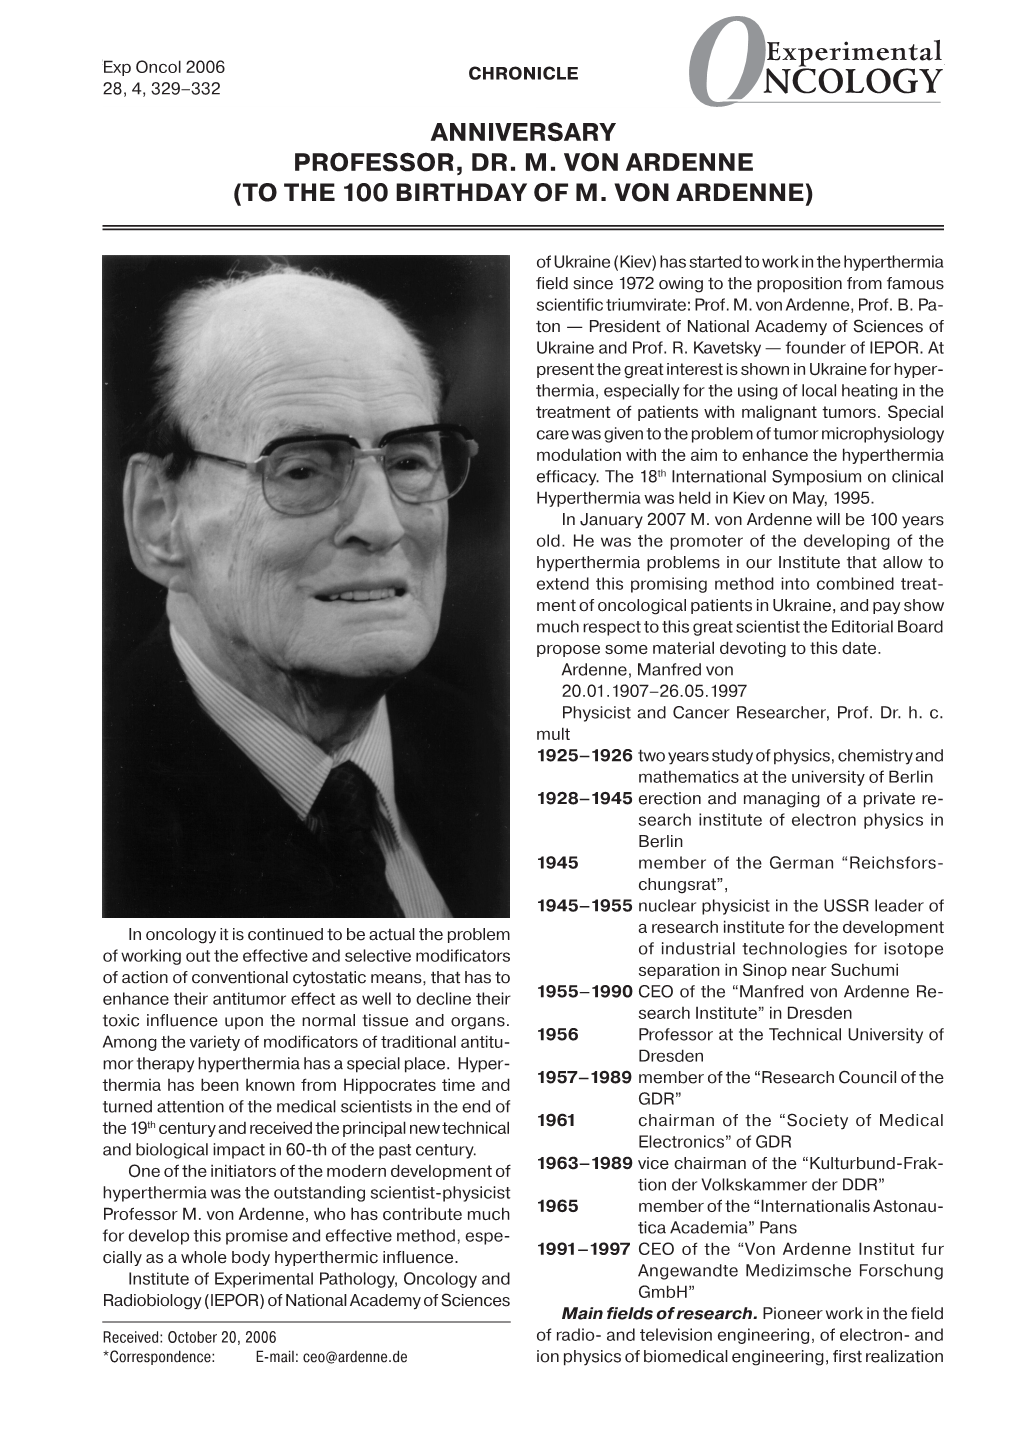 ANNIVERSARY Professor, Dr. M. Von Ardenne (To the 100 Birthday of M